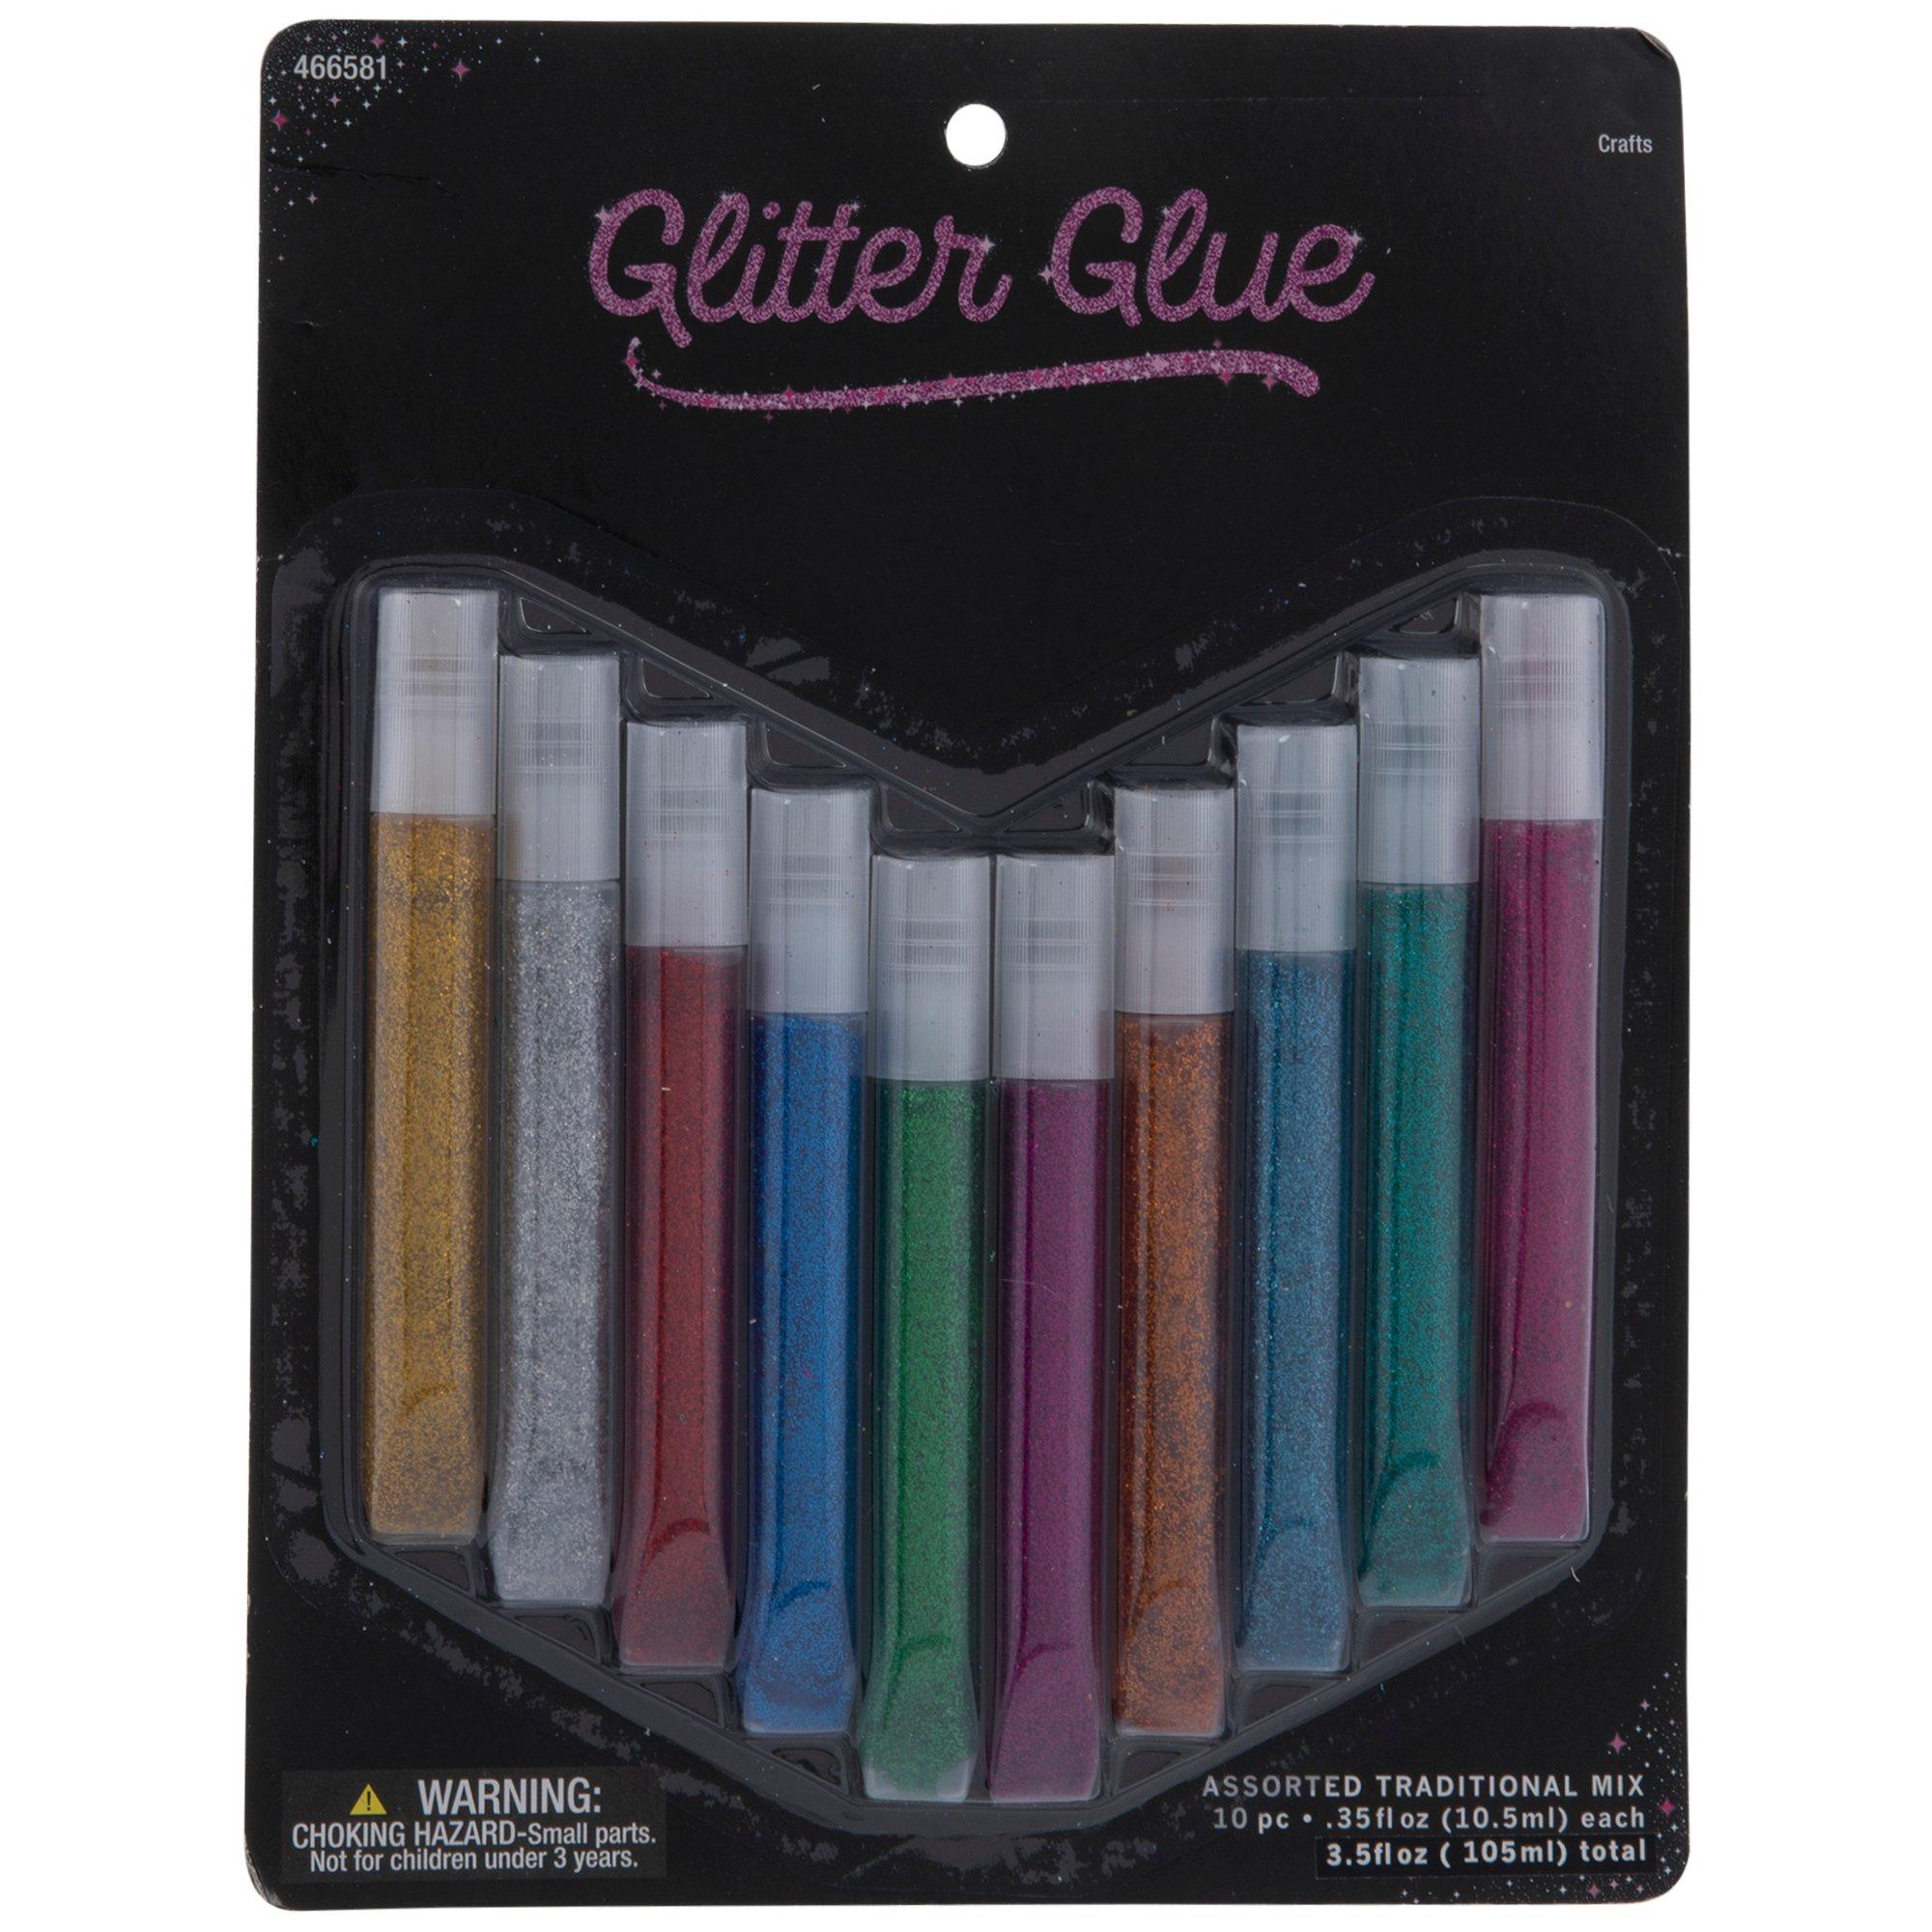 Pearlized Glitter Glue Pens